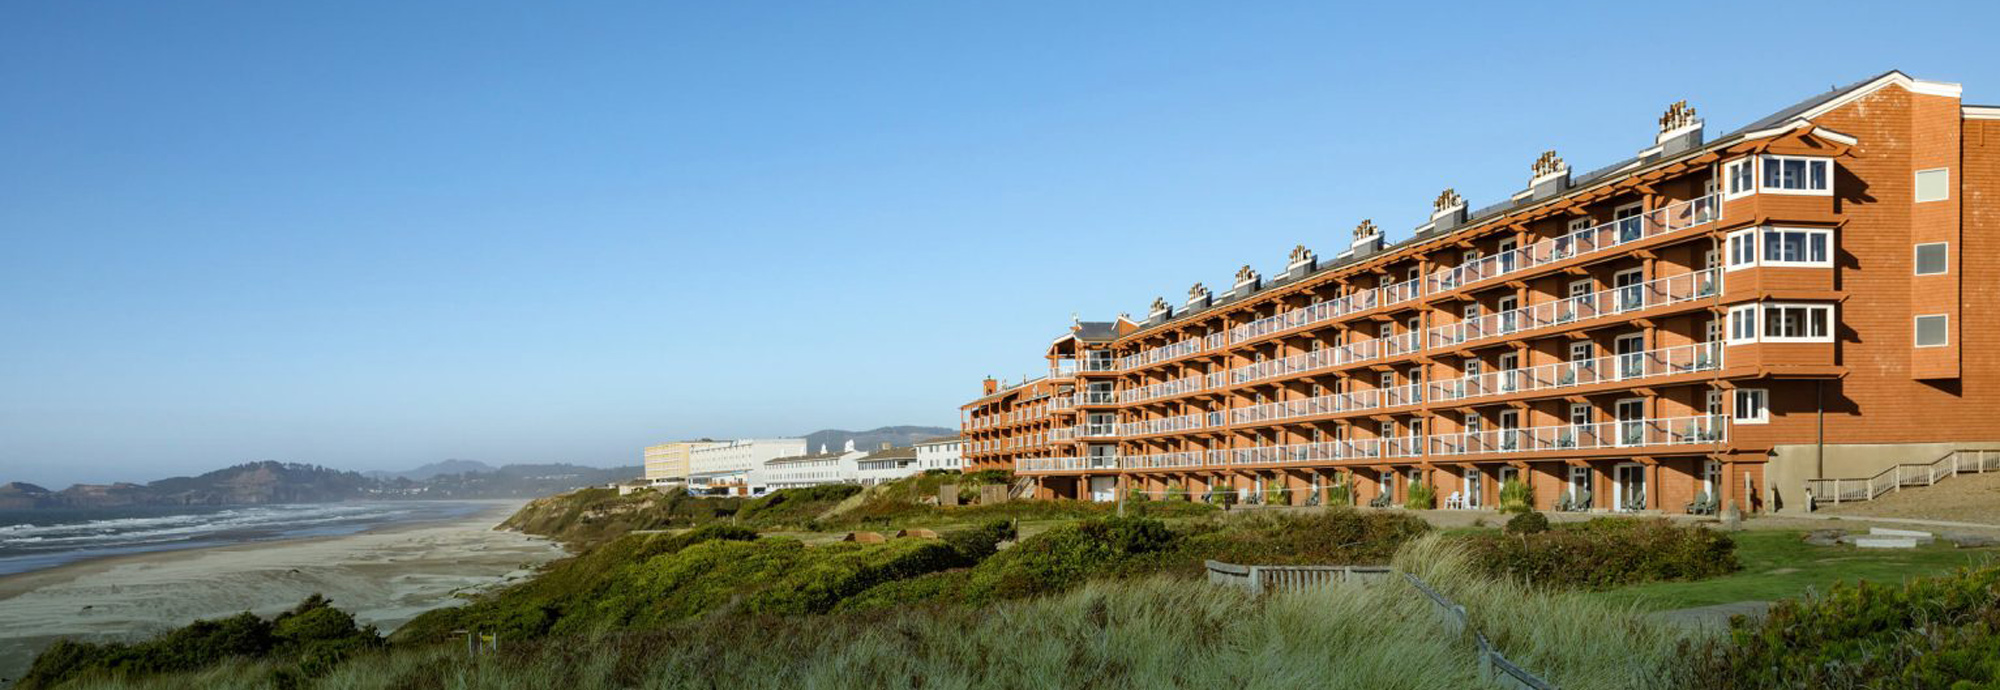 five story resort hotel near ocean